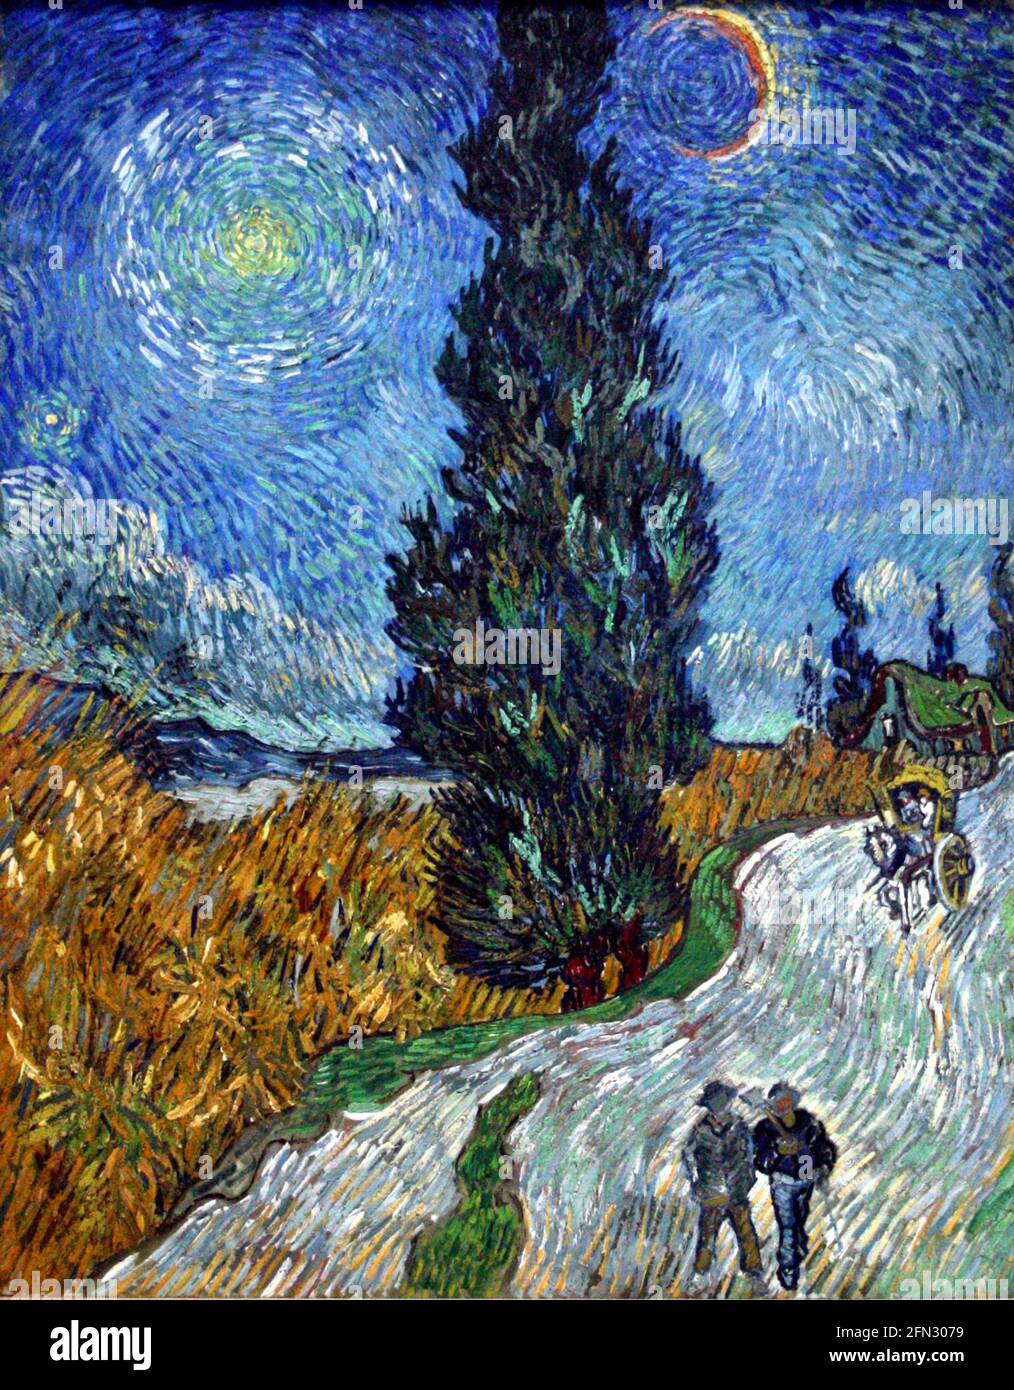 Vincent van Gogh obras de arte titulado Road with Cypress o Country Road en Provenza por la noche. Dos figuras caminan por un carril campestre en este vibrante paisaje. Foto de stock